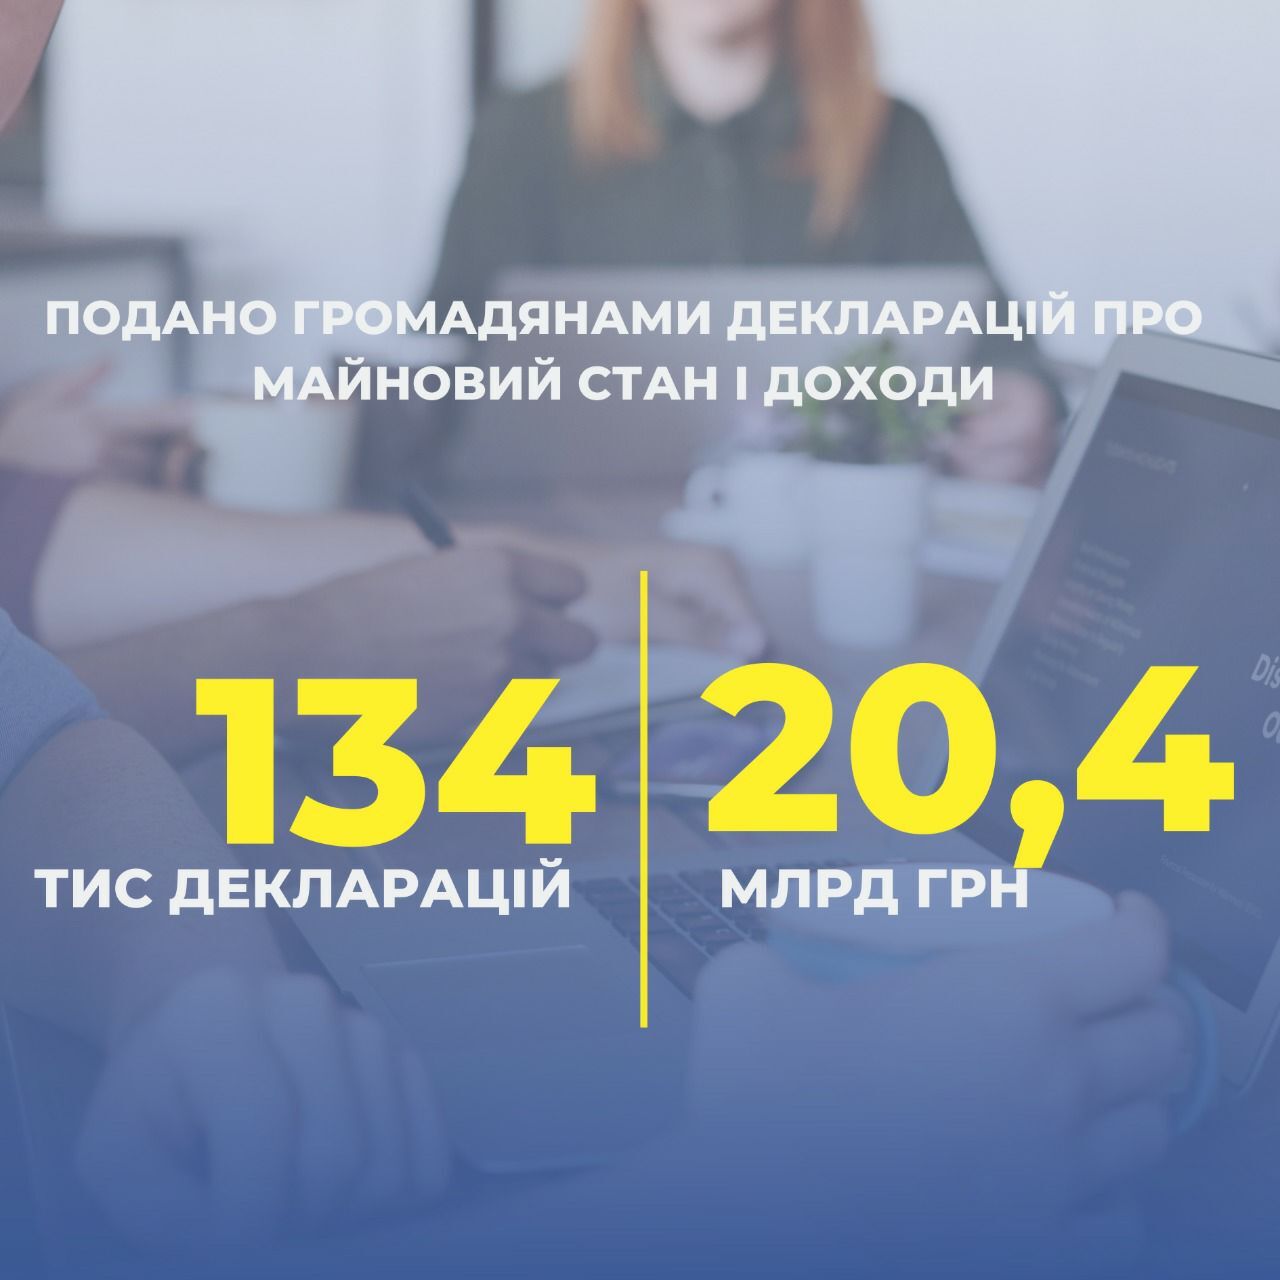 ГНС: Свои доходы задекларировали уже более 134 тысячи украинцев